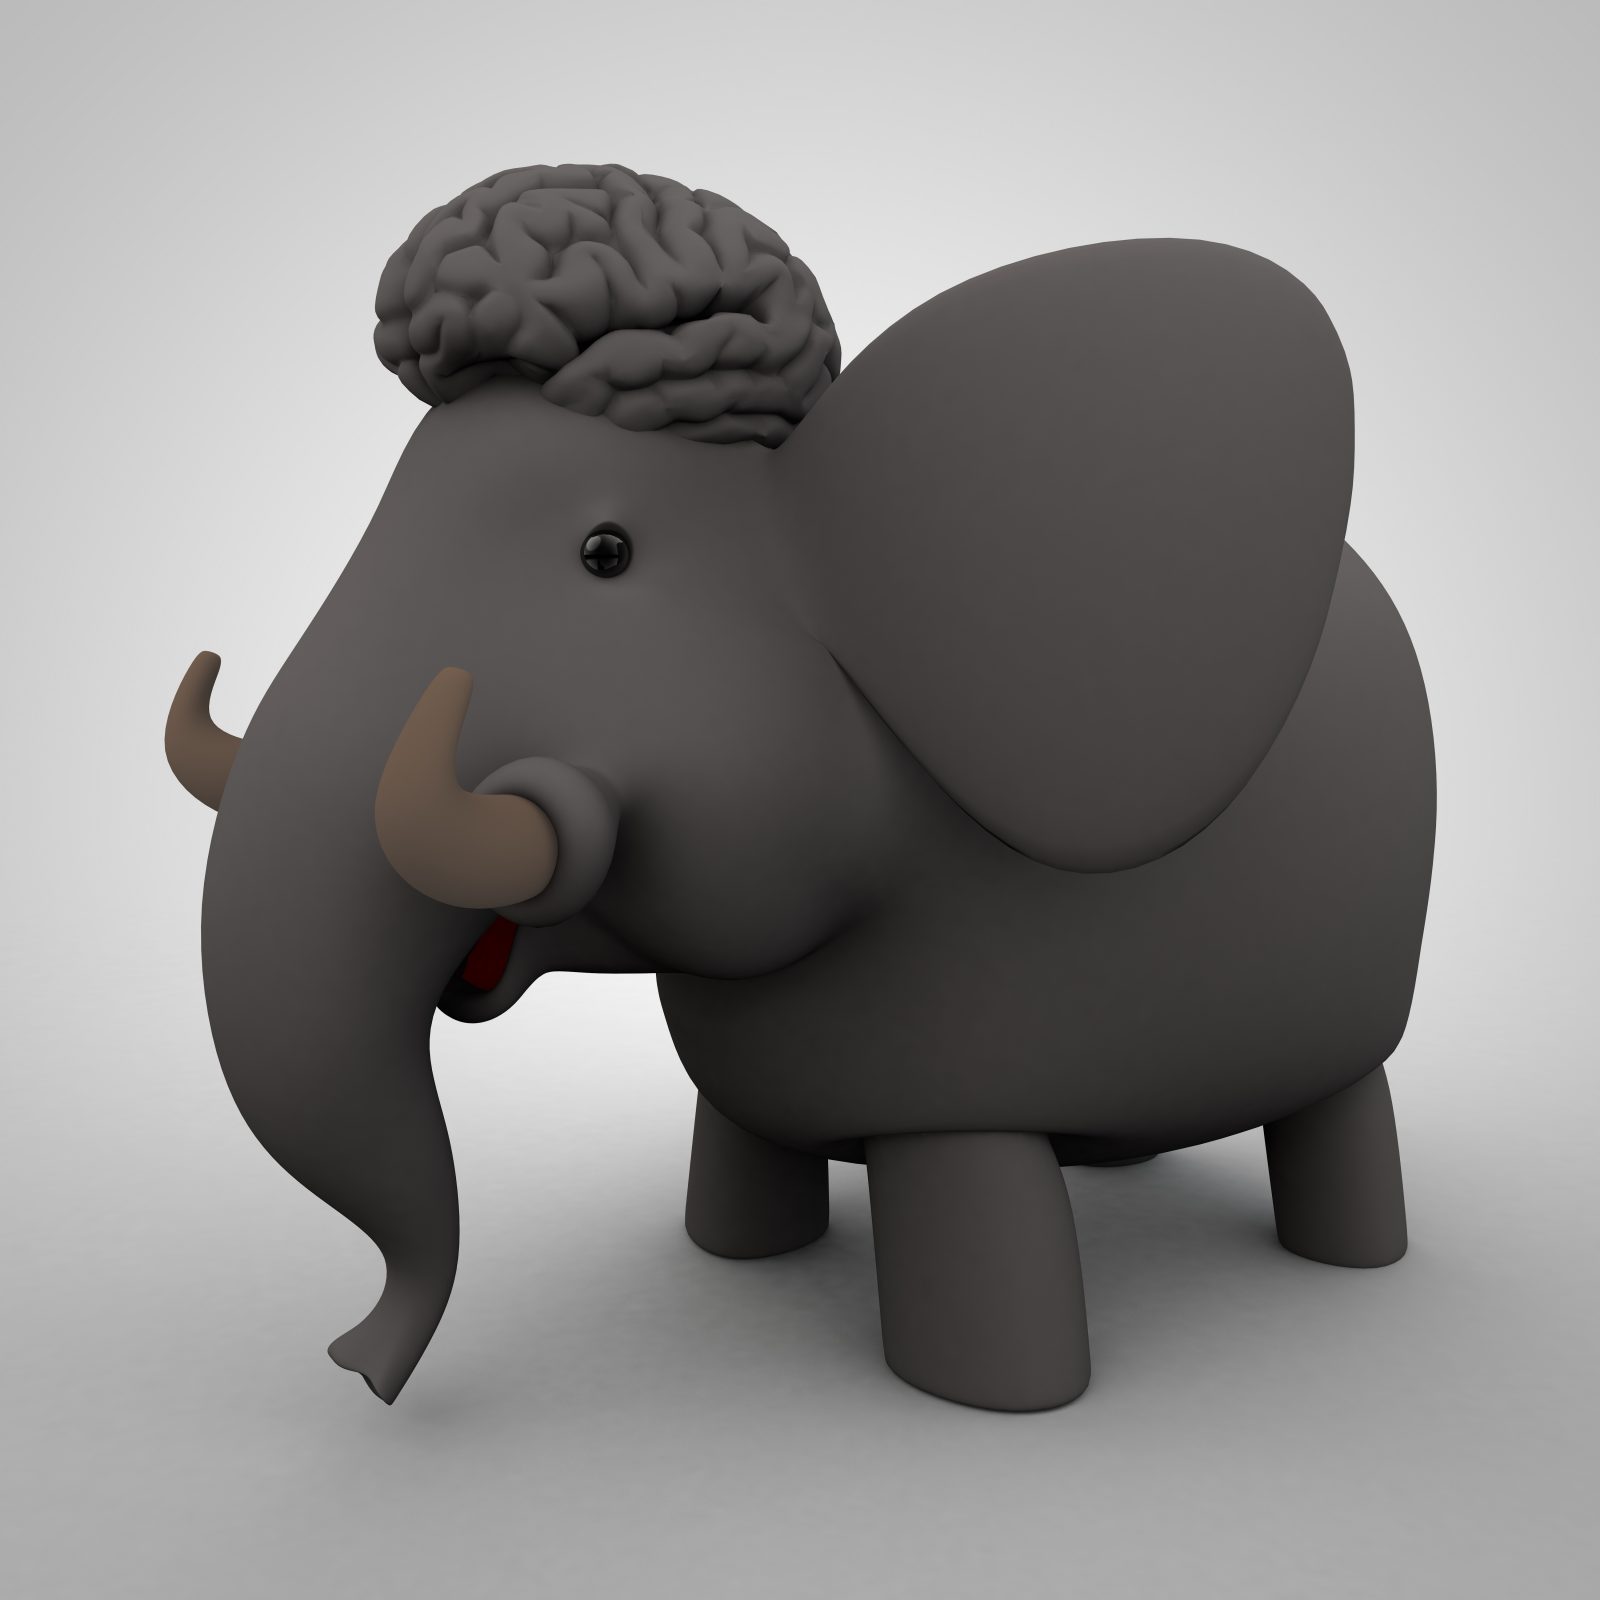 Cartoon Elephant with a massive brain